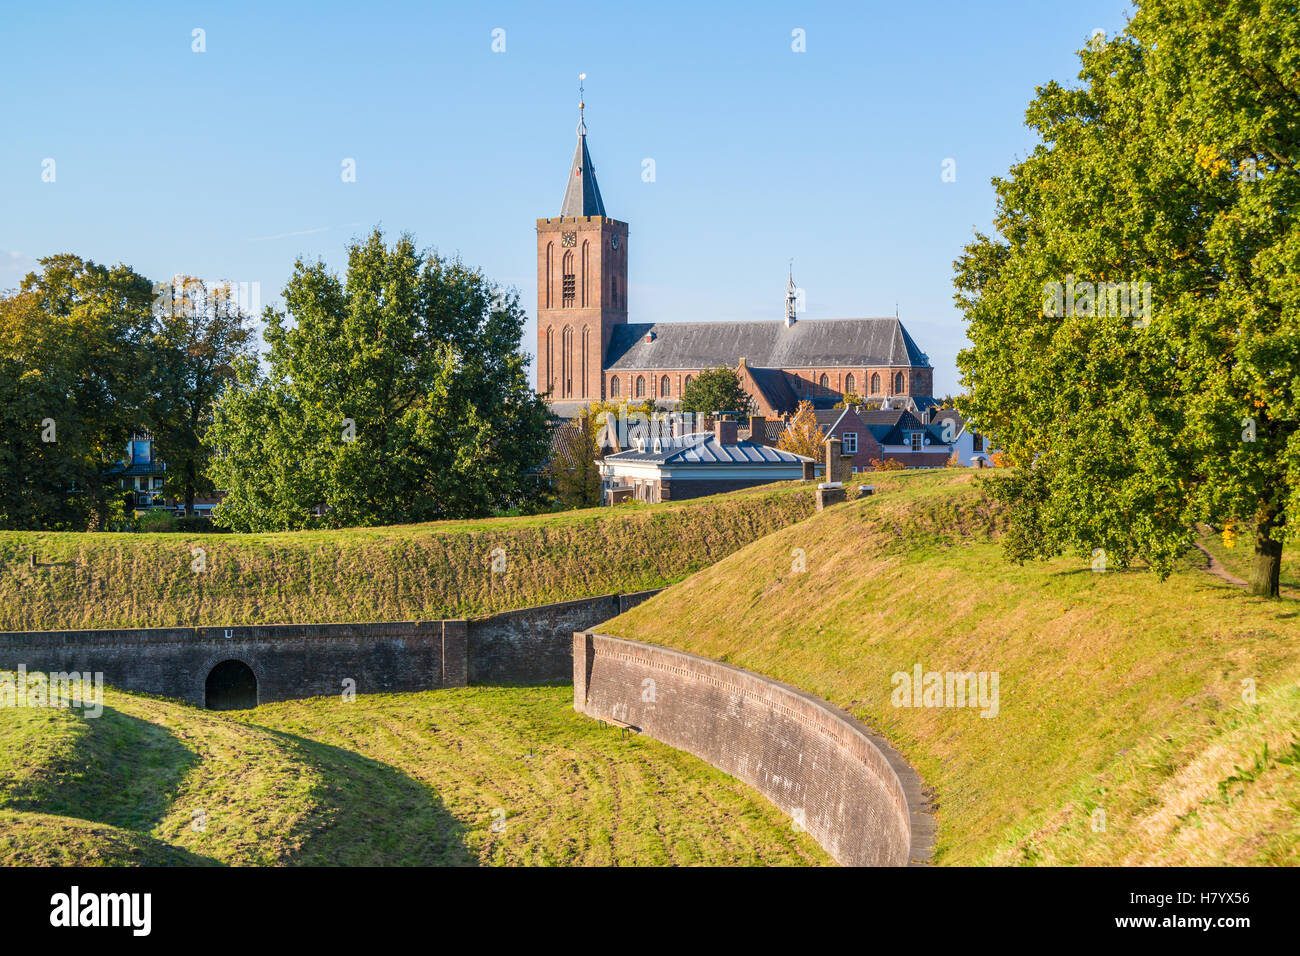 Große Kirche und Wall mit Bastei Promers in alte befestigte Stadt Naarden, Nordholland, Niederlande Stockfoto